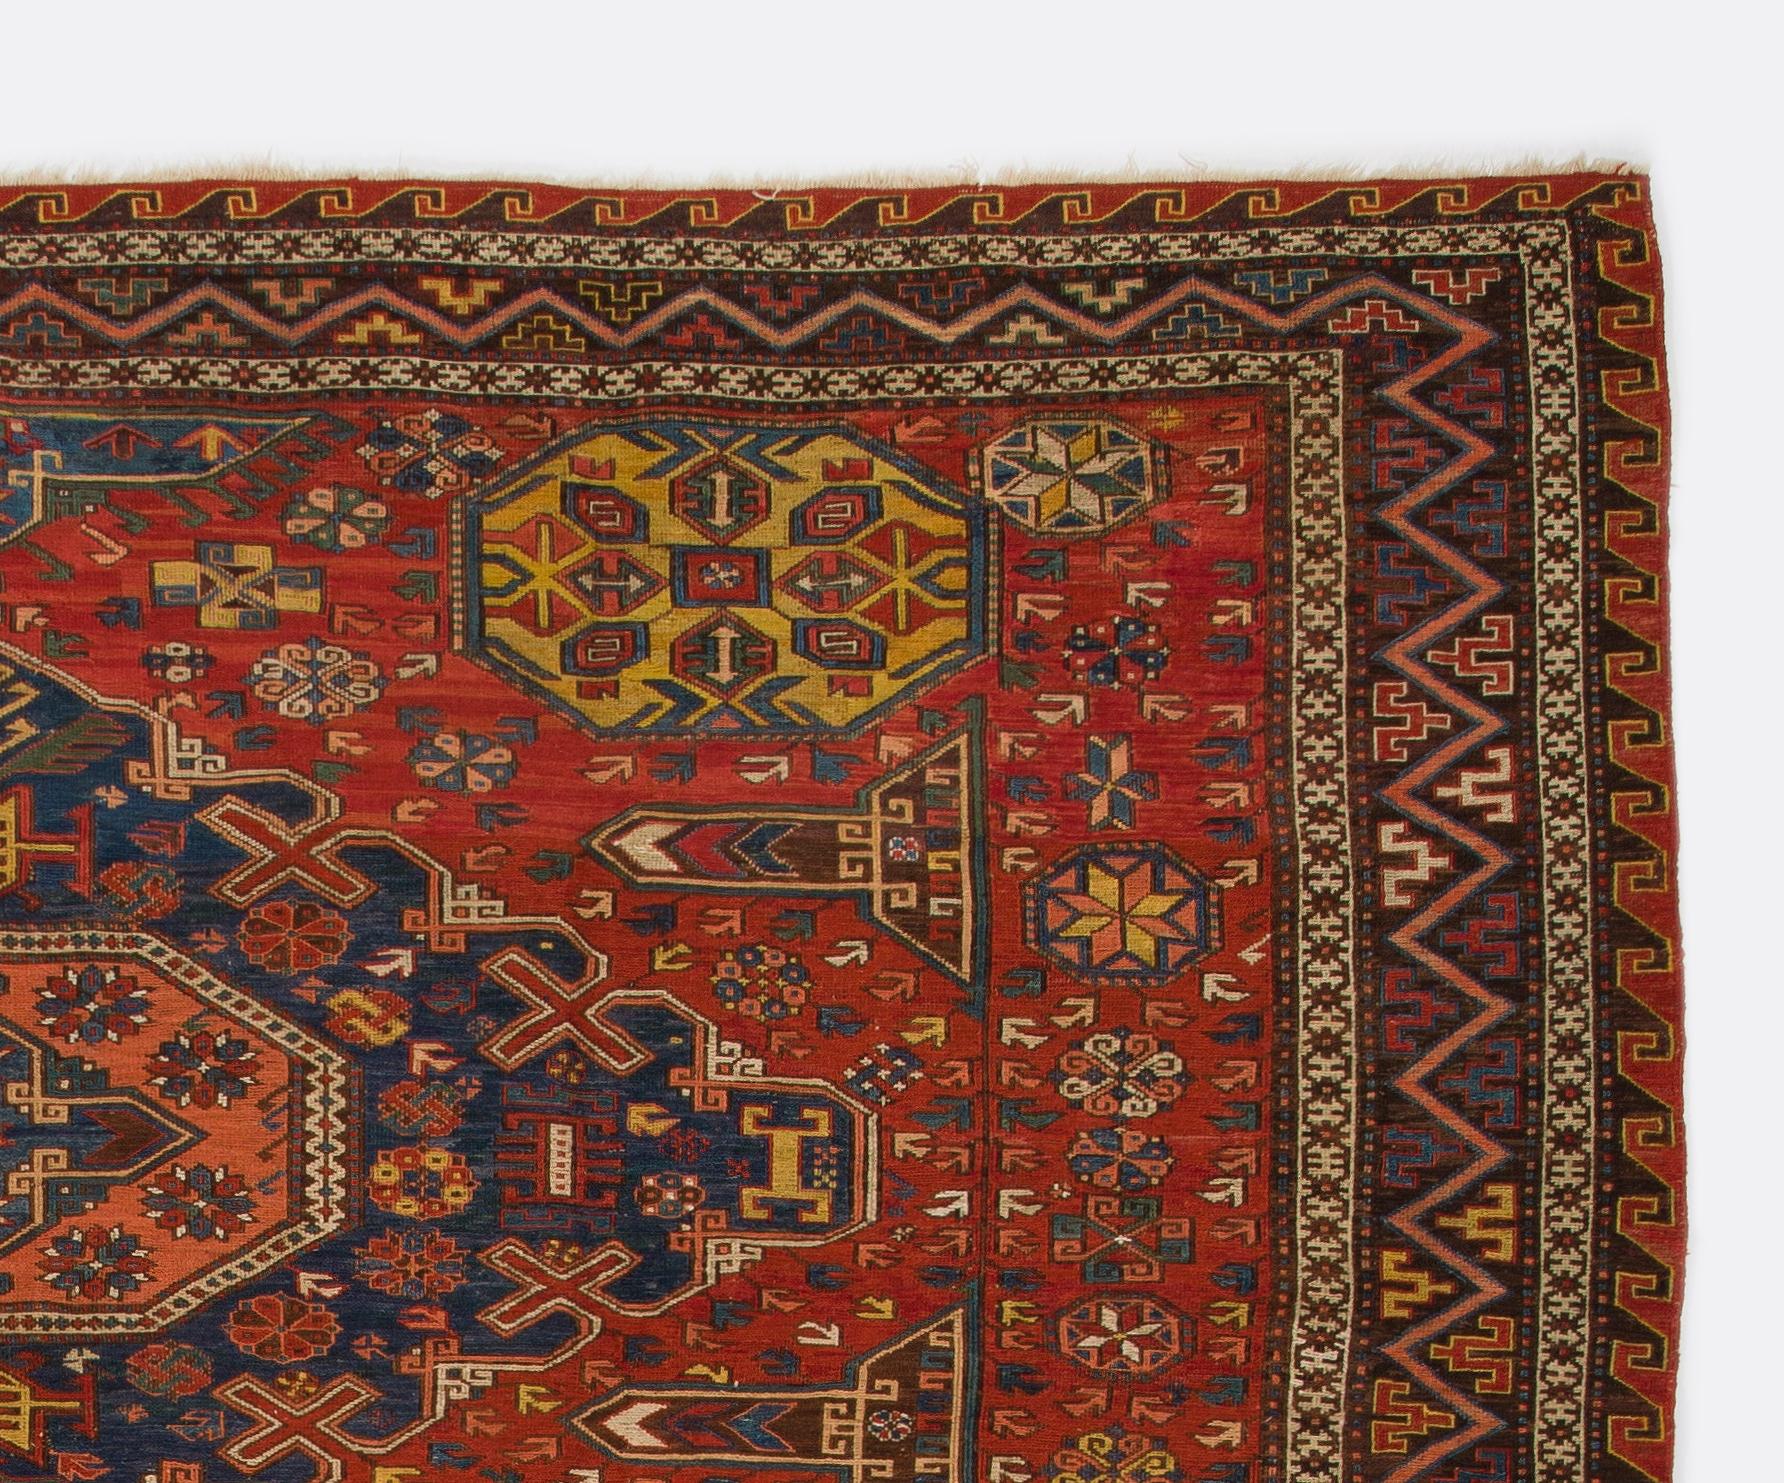 Un fascinant tapis Soumak du Caucase datant du 19e siècle, tissé à la main selon la technique spéciale de l'écorce.  Le 